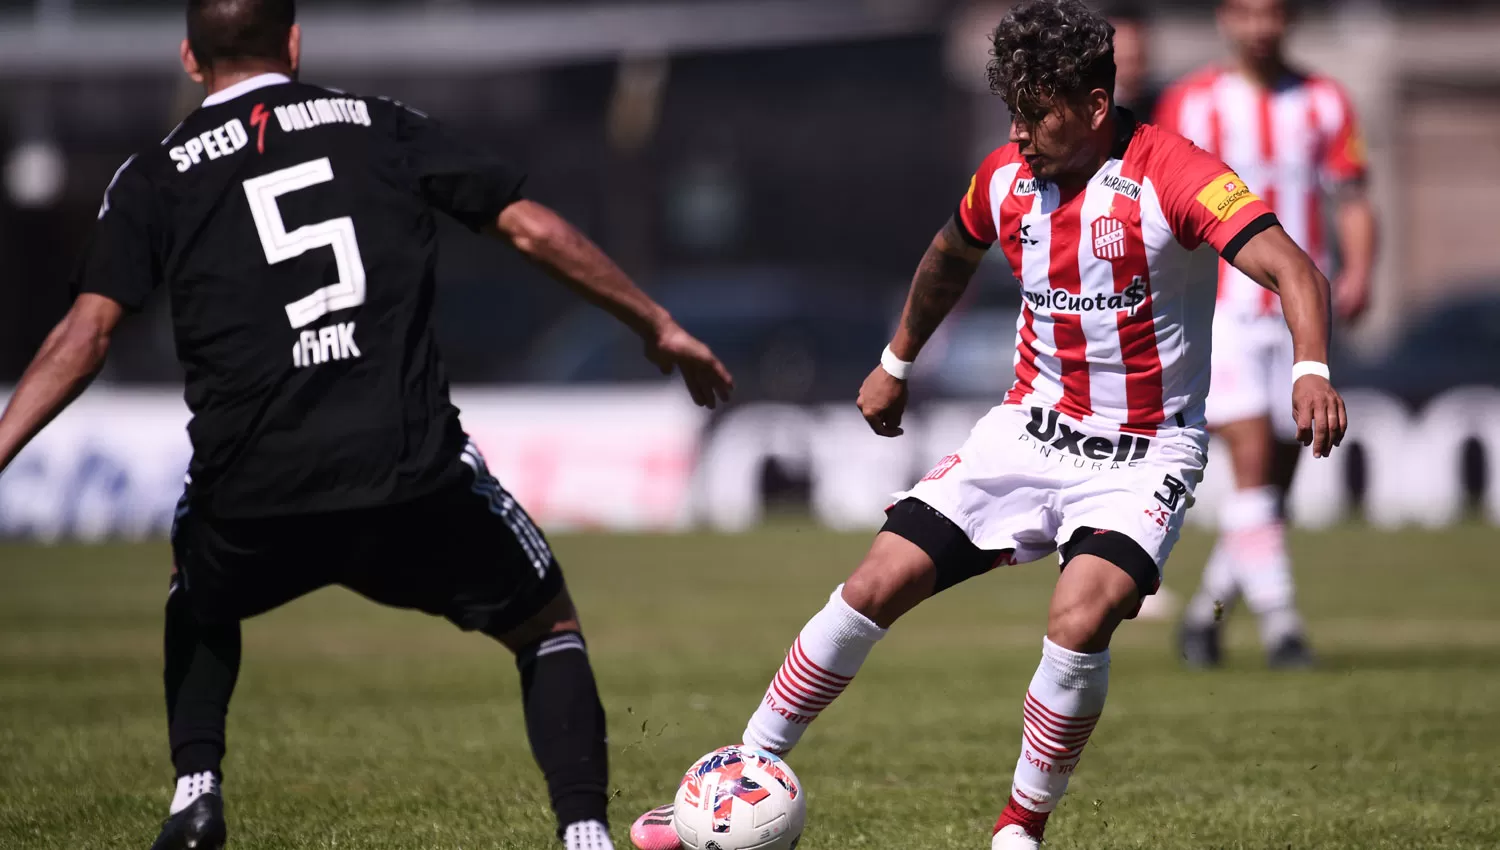 FIGURA. El lateral izquierdo Lucas Diarte es uno de los puntos más alto de San Martín durante la temporada.